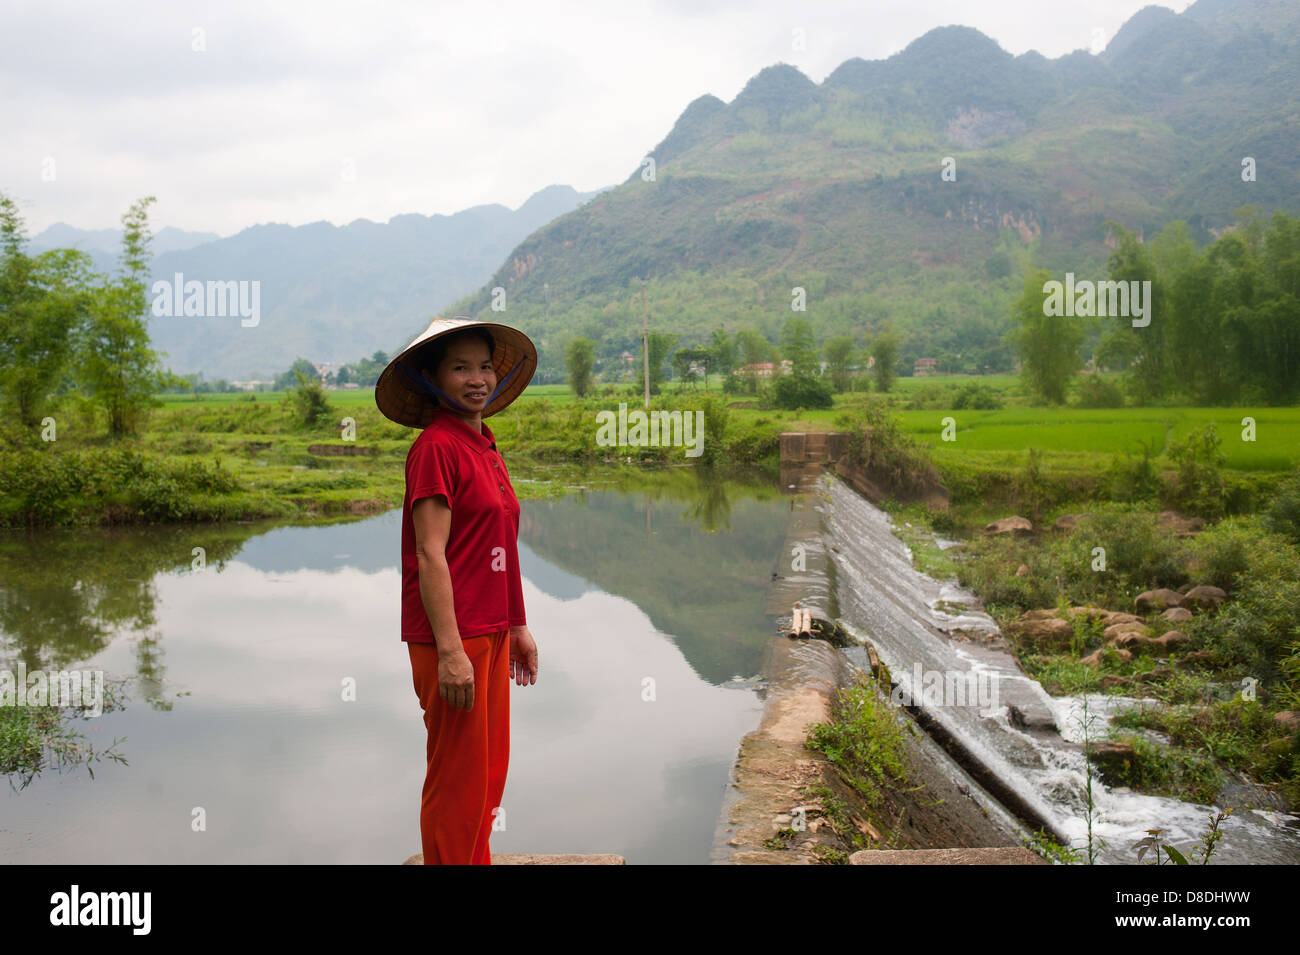 La région de Sapa, Vietnam du Nord - Femme travaillant dans les rizières Banque D'Images